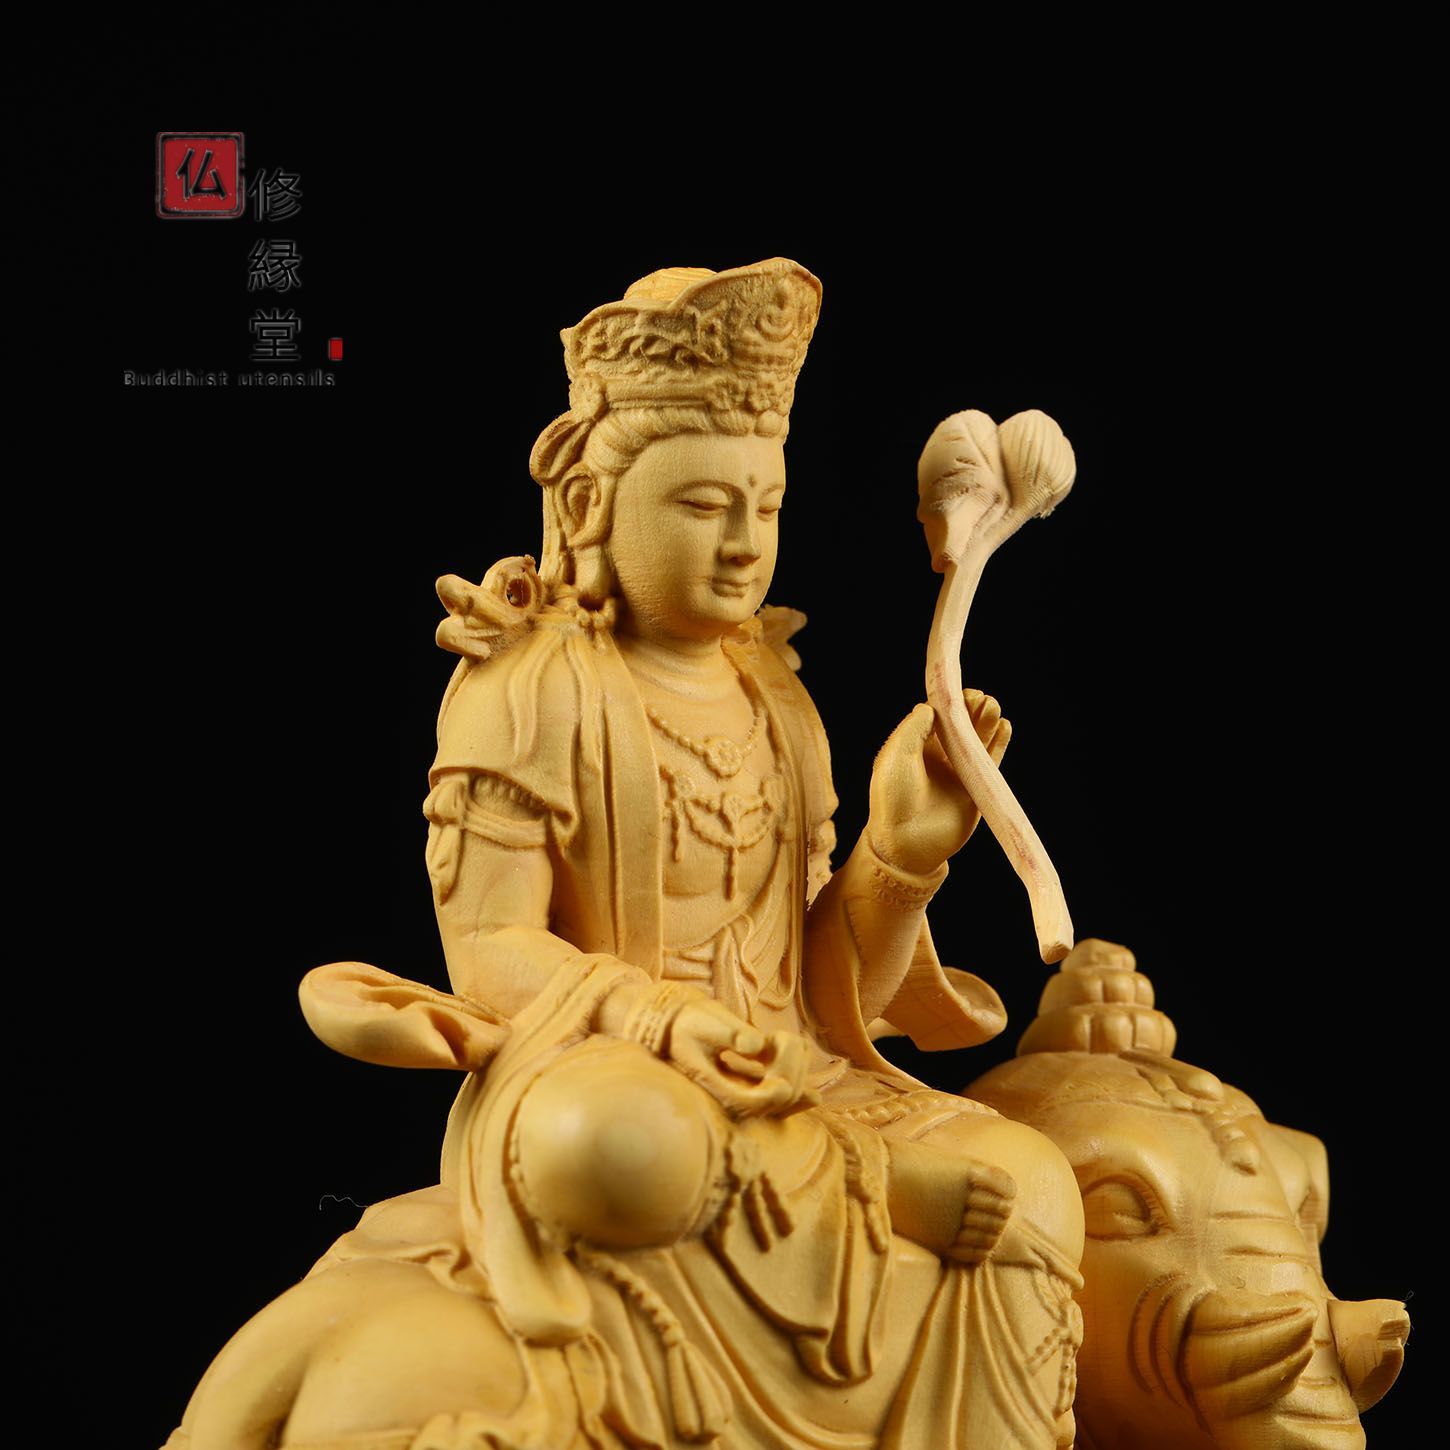 木彫り 仏像 文殊菩薩 普賢菩薩座像一式 彫刻 柘植材 仏教美術